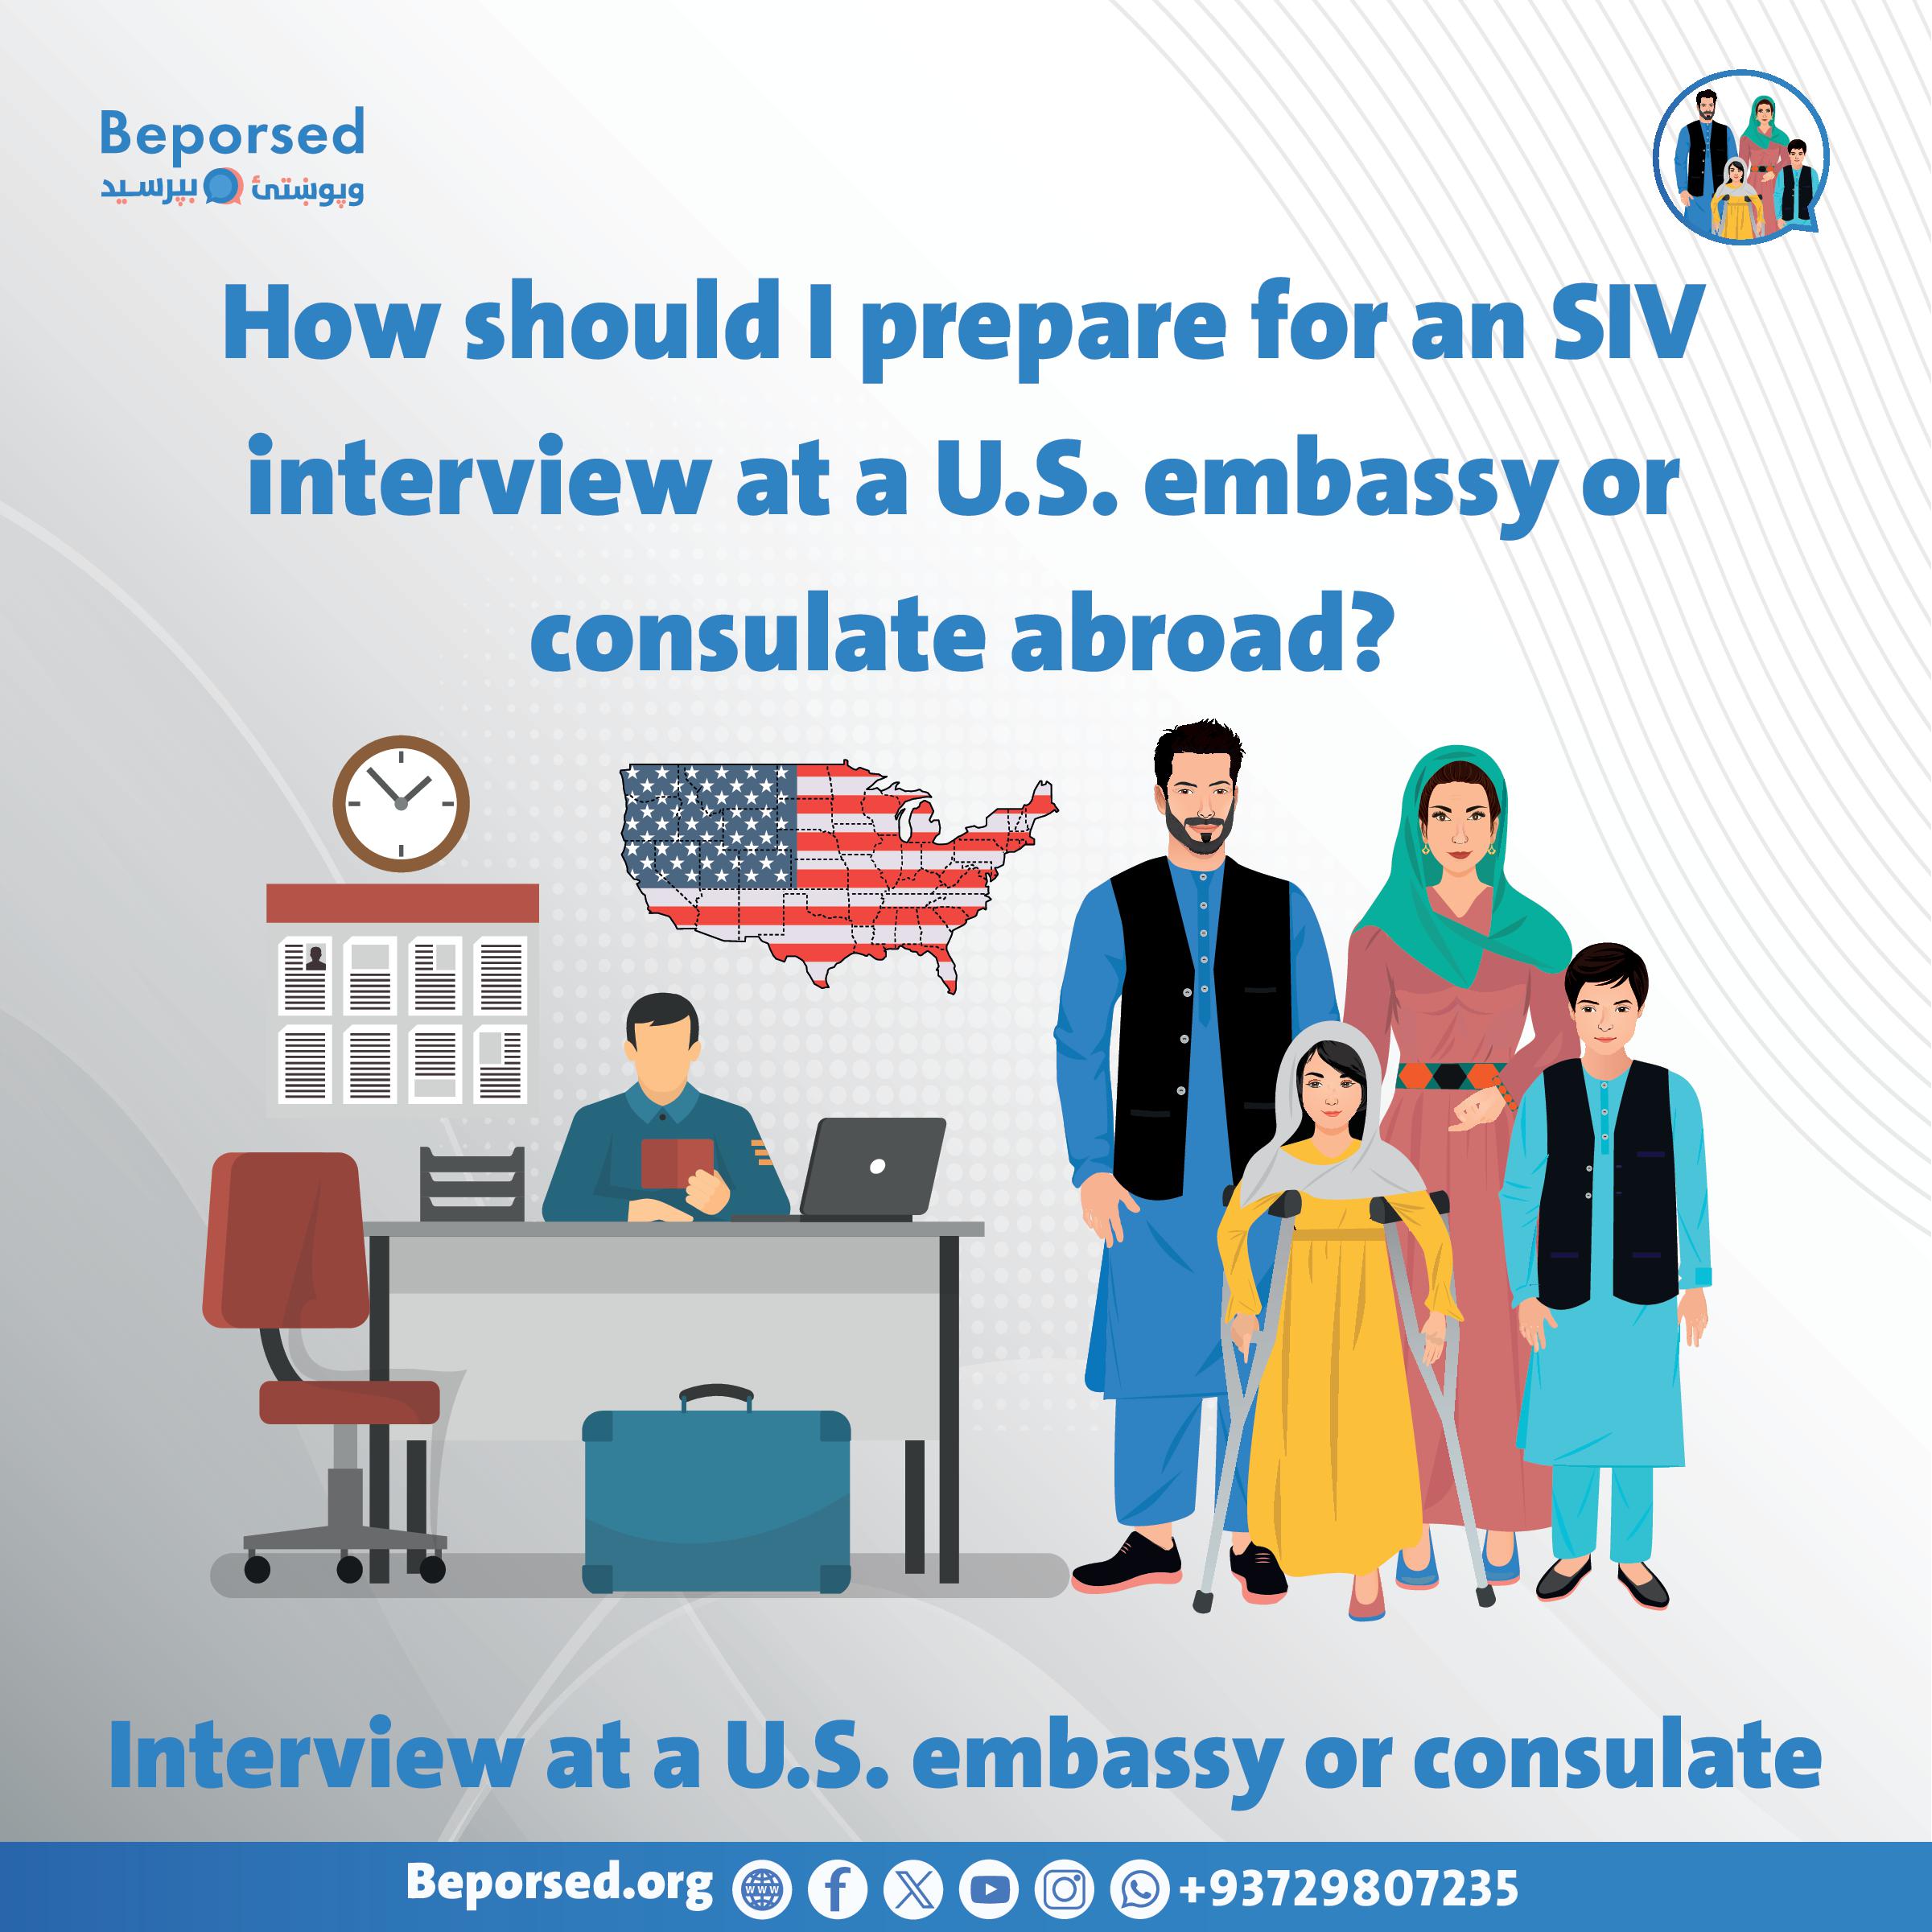 برای مصاحبه SIV در سفارت یا کنسلگری ایالات متحده در خارج از کشور چگونه باید آمادگی بگیرم؟-003.jpg